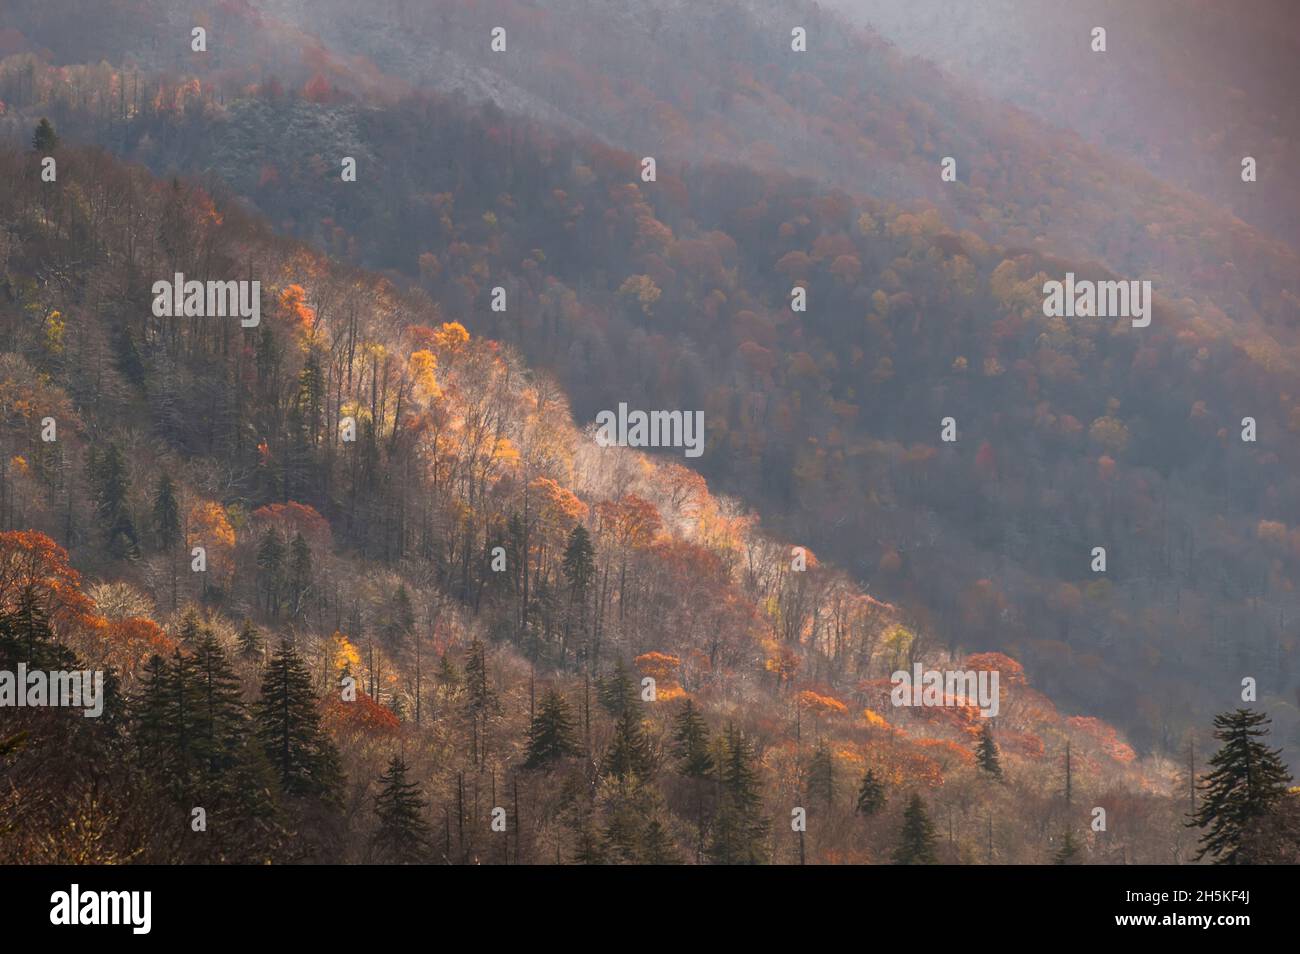 Le brouillard survole un paysage forestier à l'automne. Banque D'Images